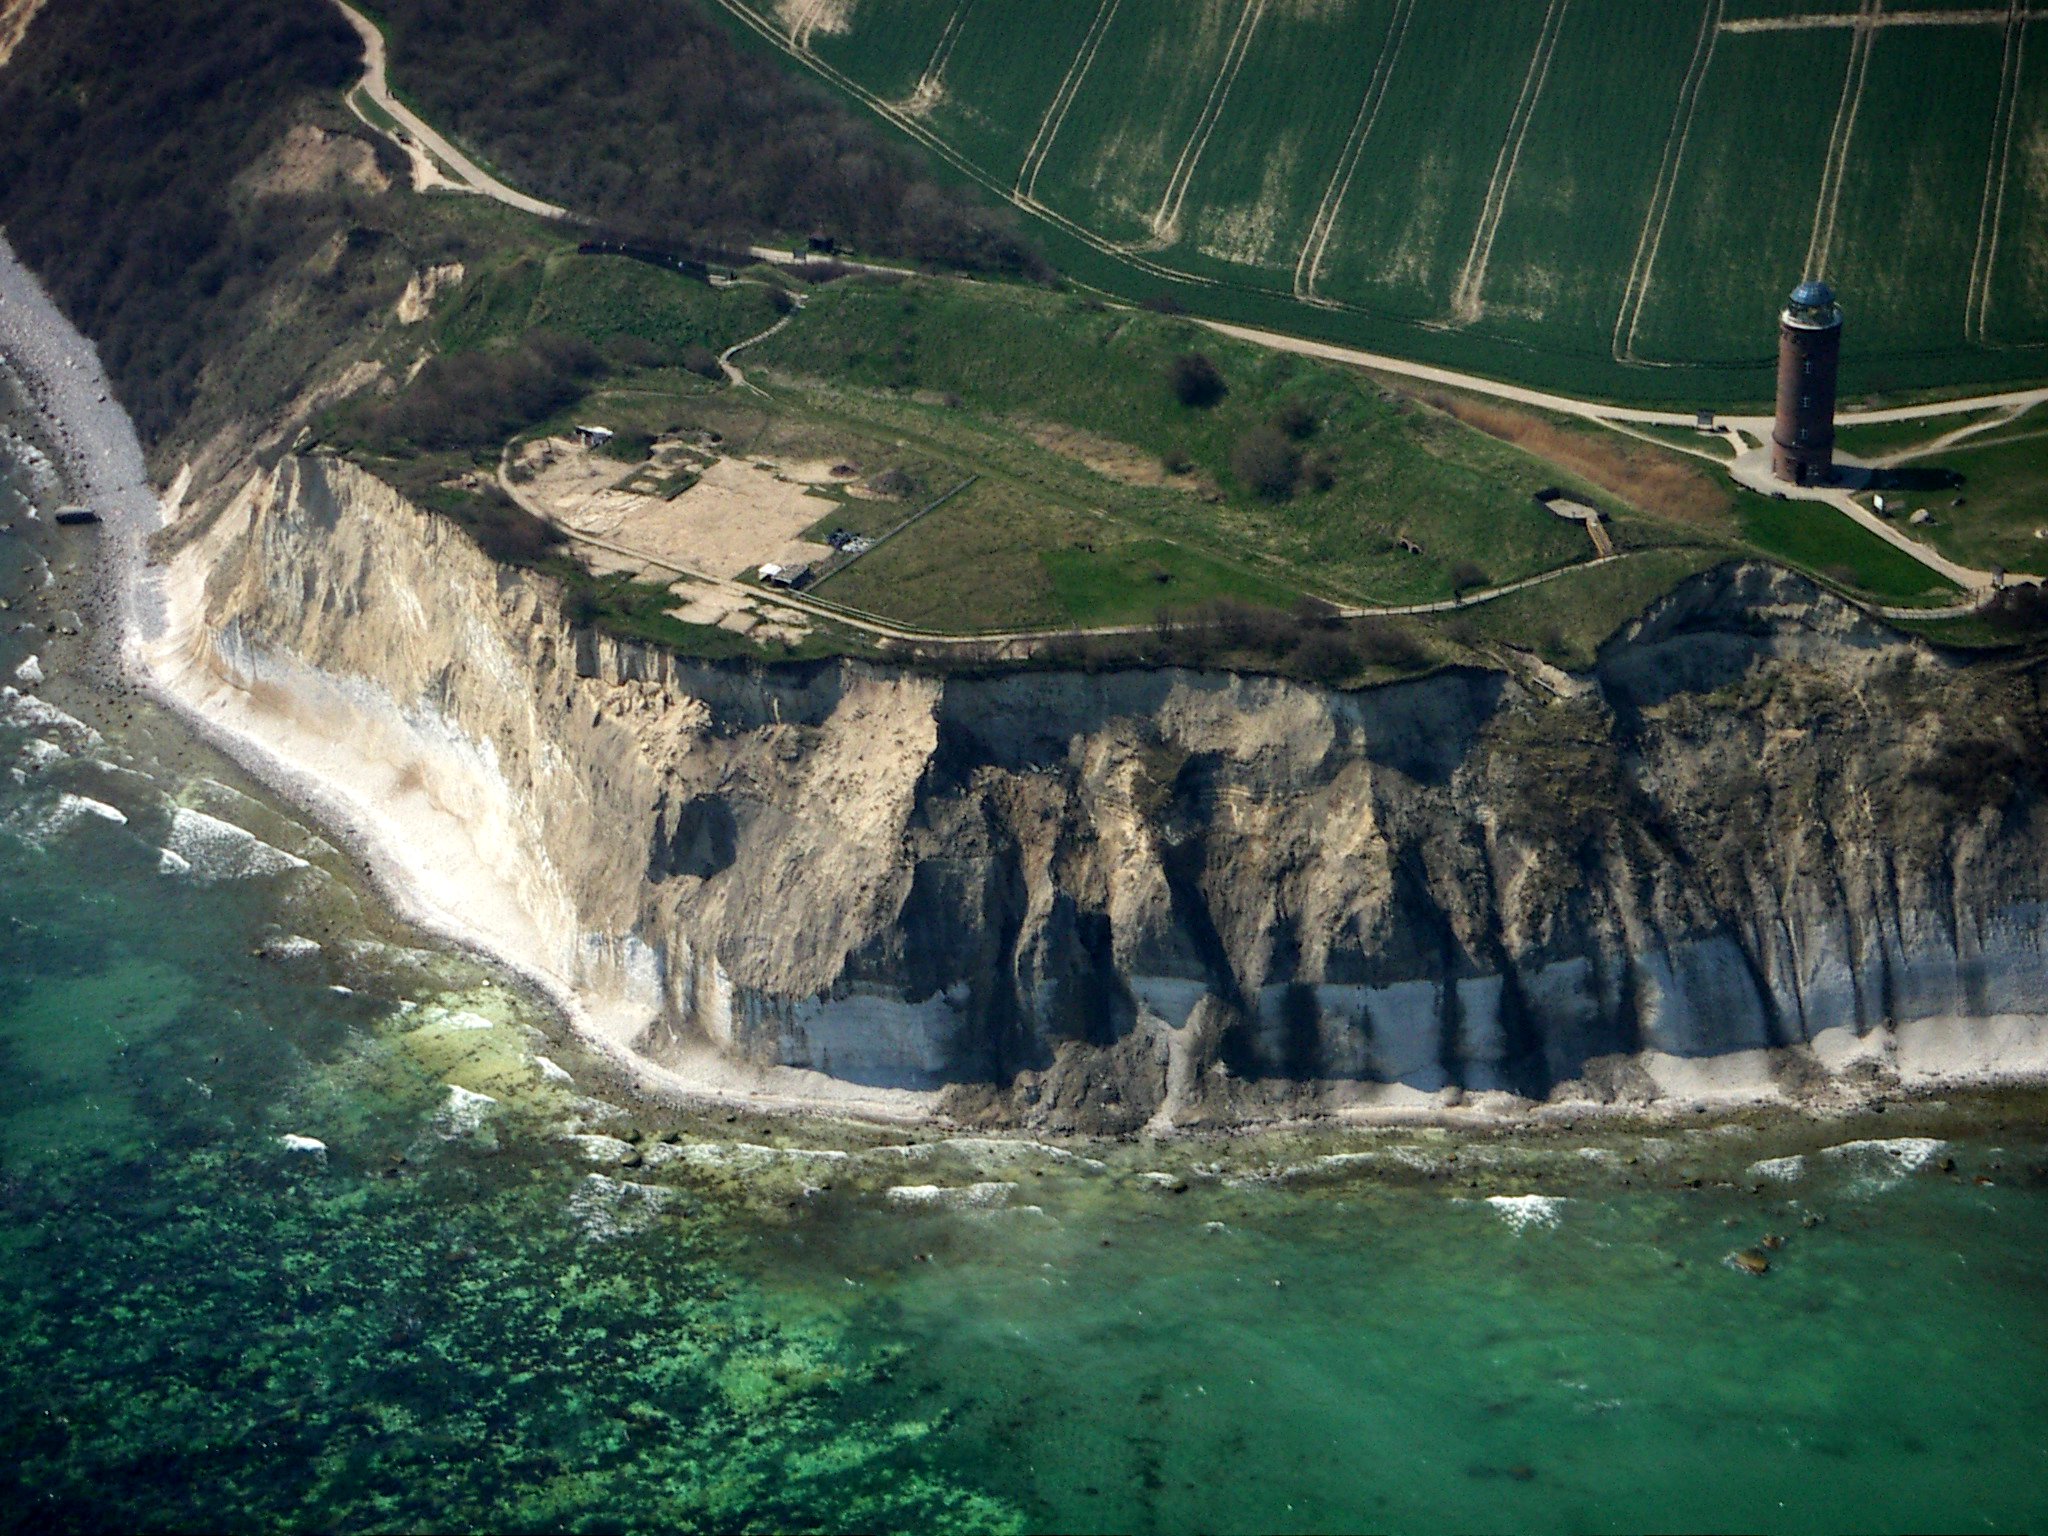 Меловые скалы мыса Аркона на острове Рюген (Руян), где находилось главное святилище балтийских славян